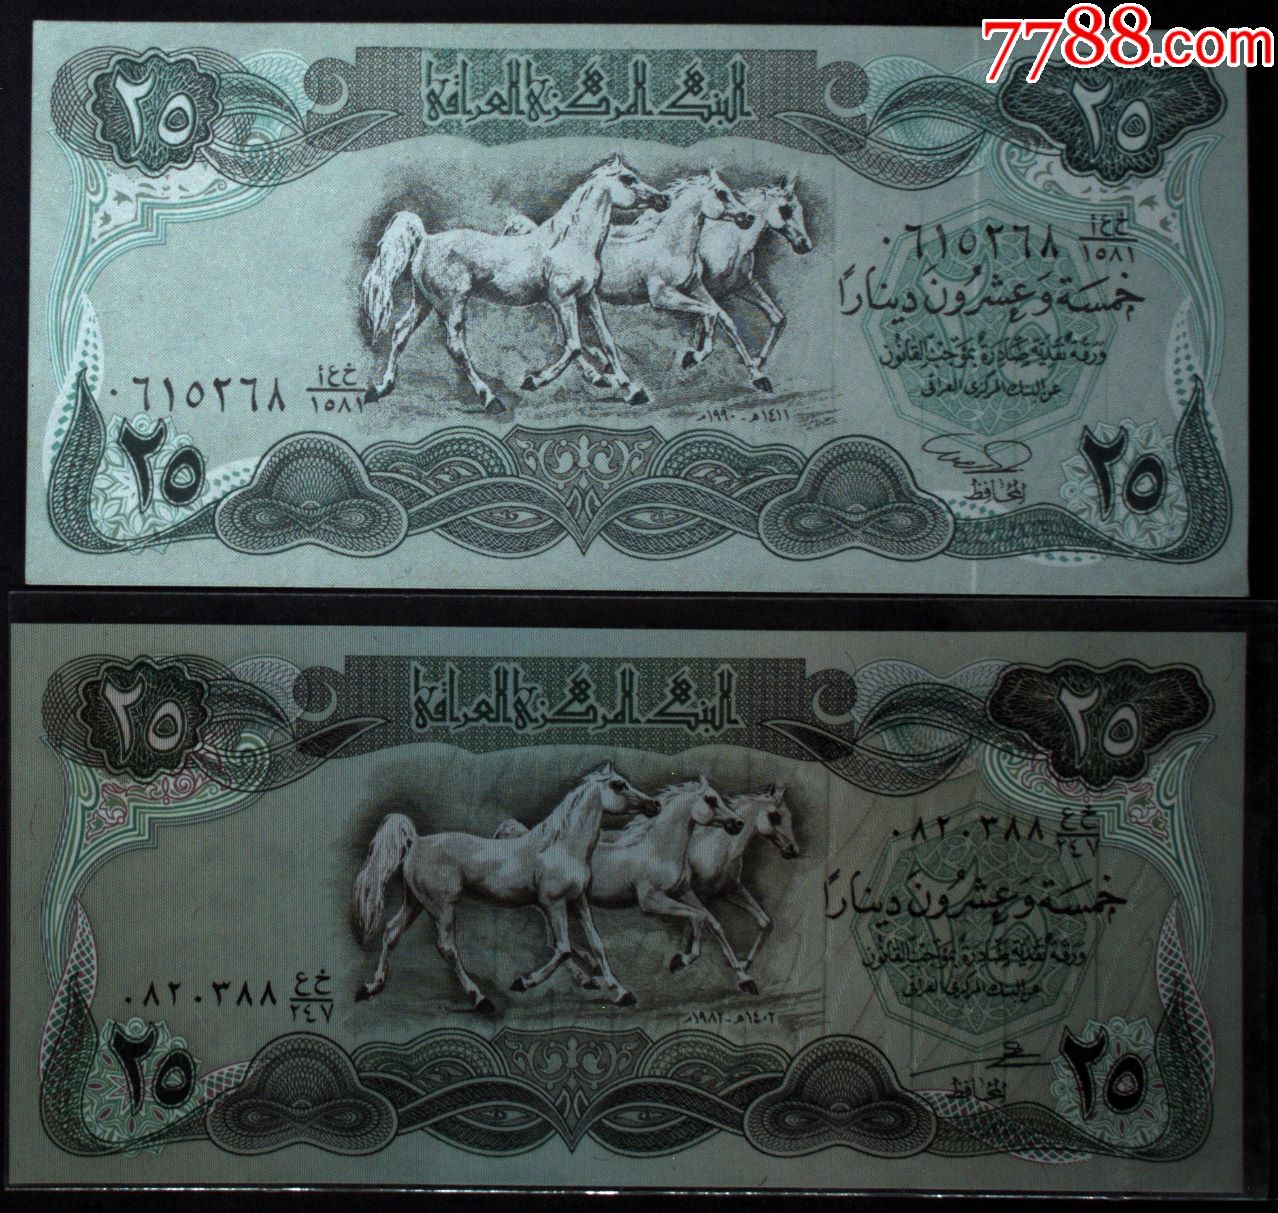 伊拉克钱币5第纳尔纸币1张旧品1980年-价格:10元-se93775103-外国钱币-零售-7788收藏__收藏热线